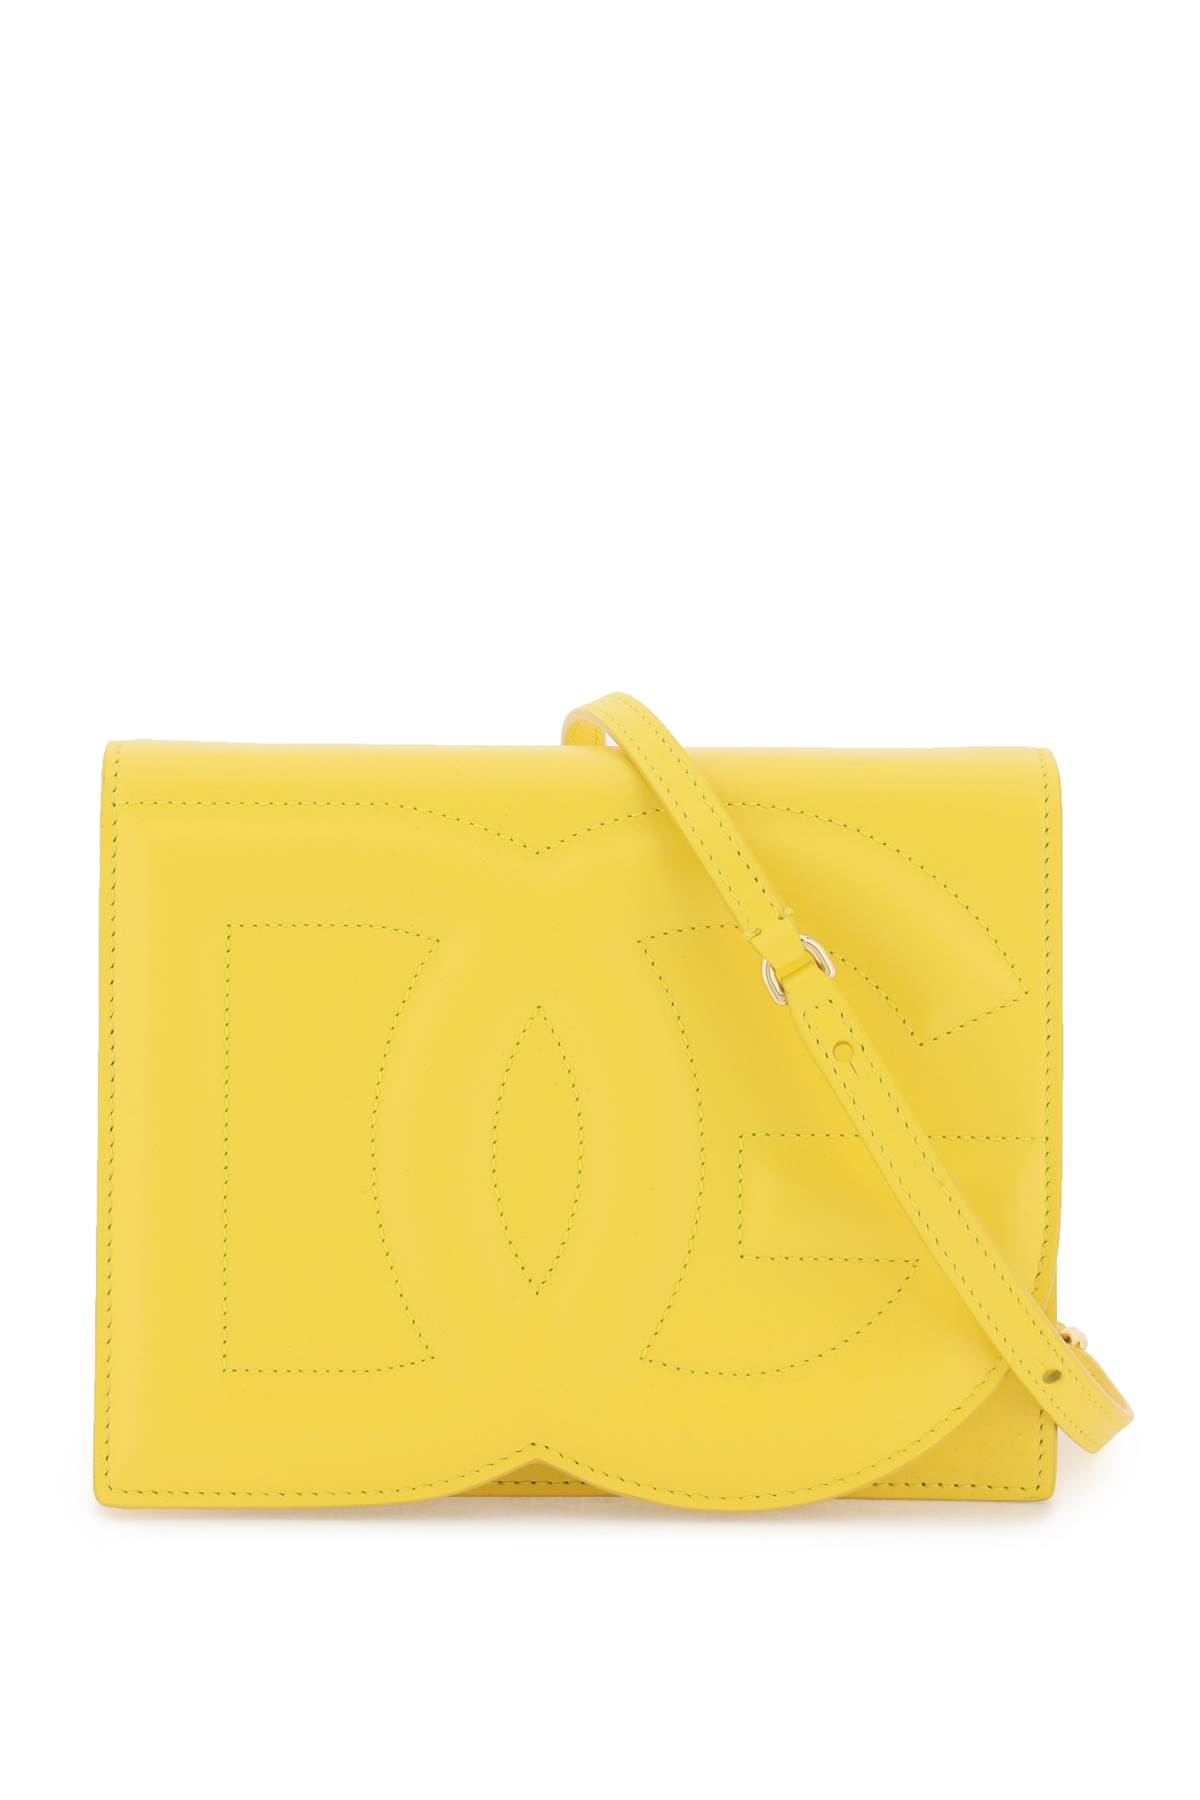 Dolce & Gabbana Dg Logo Shoulder Bag